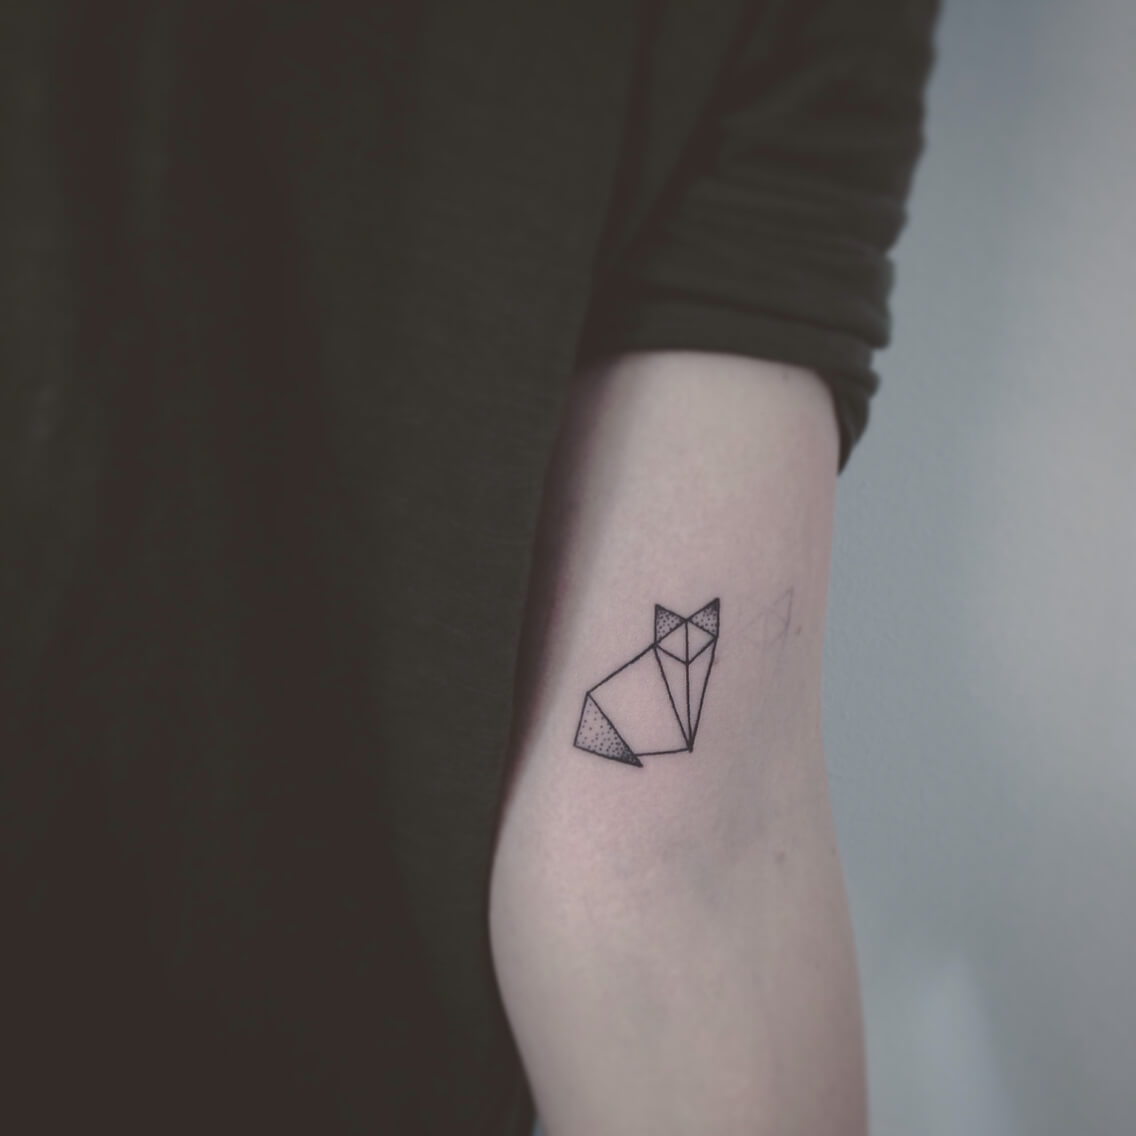 Cat Geometric Tattoos